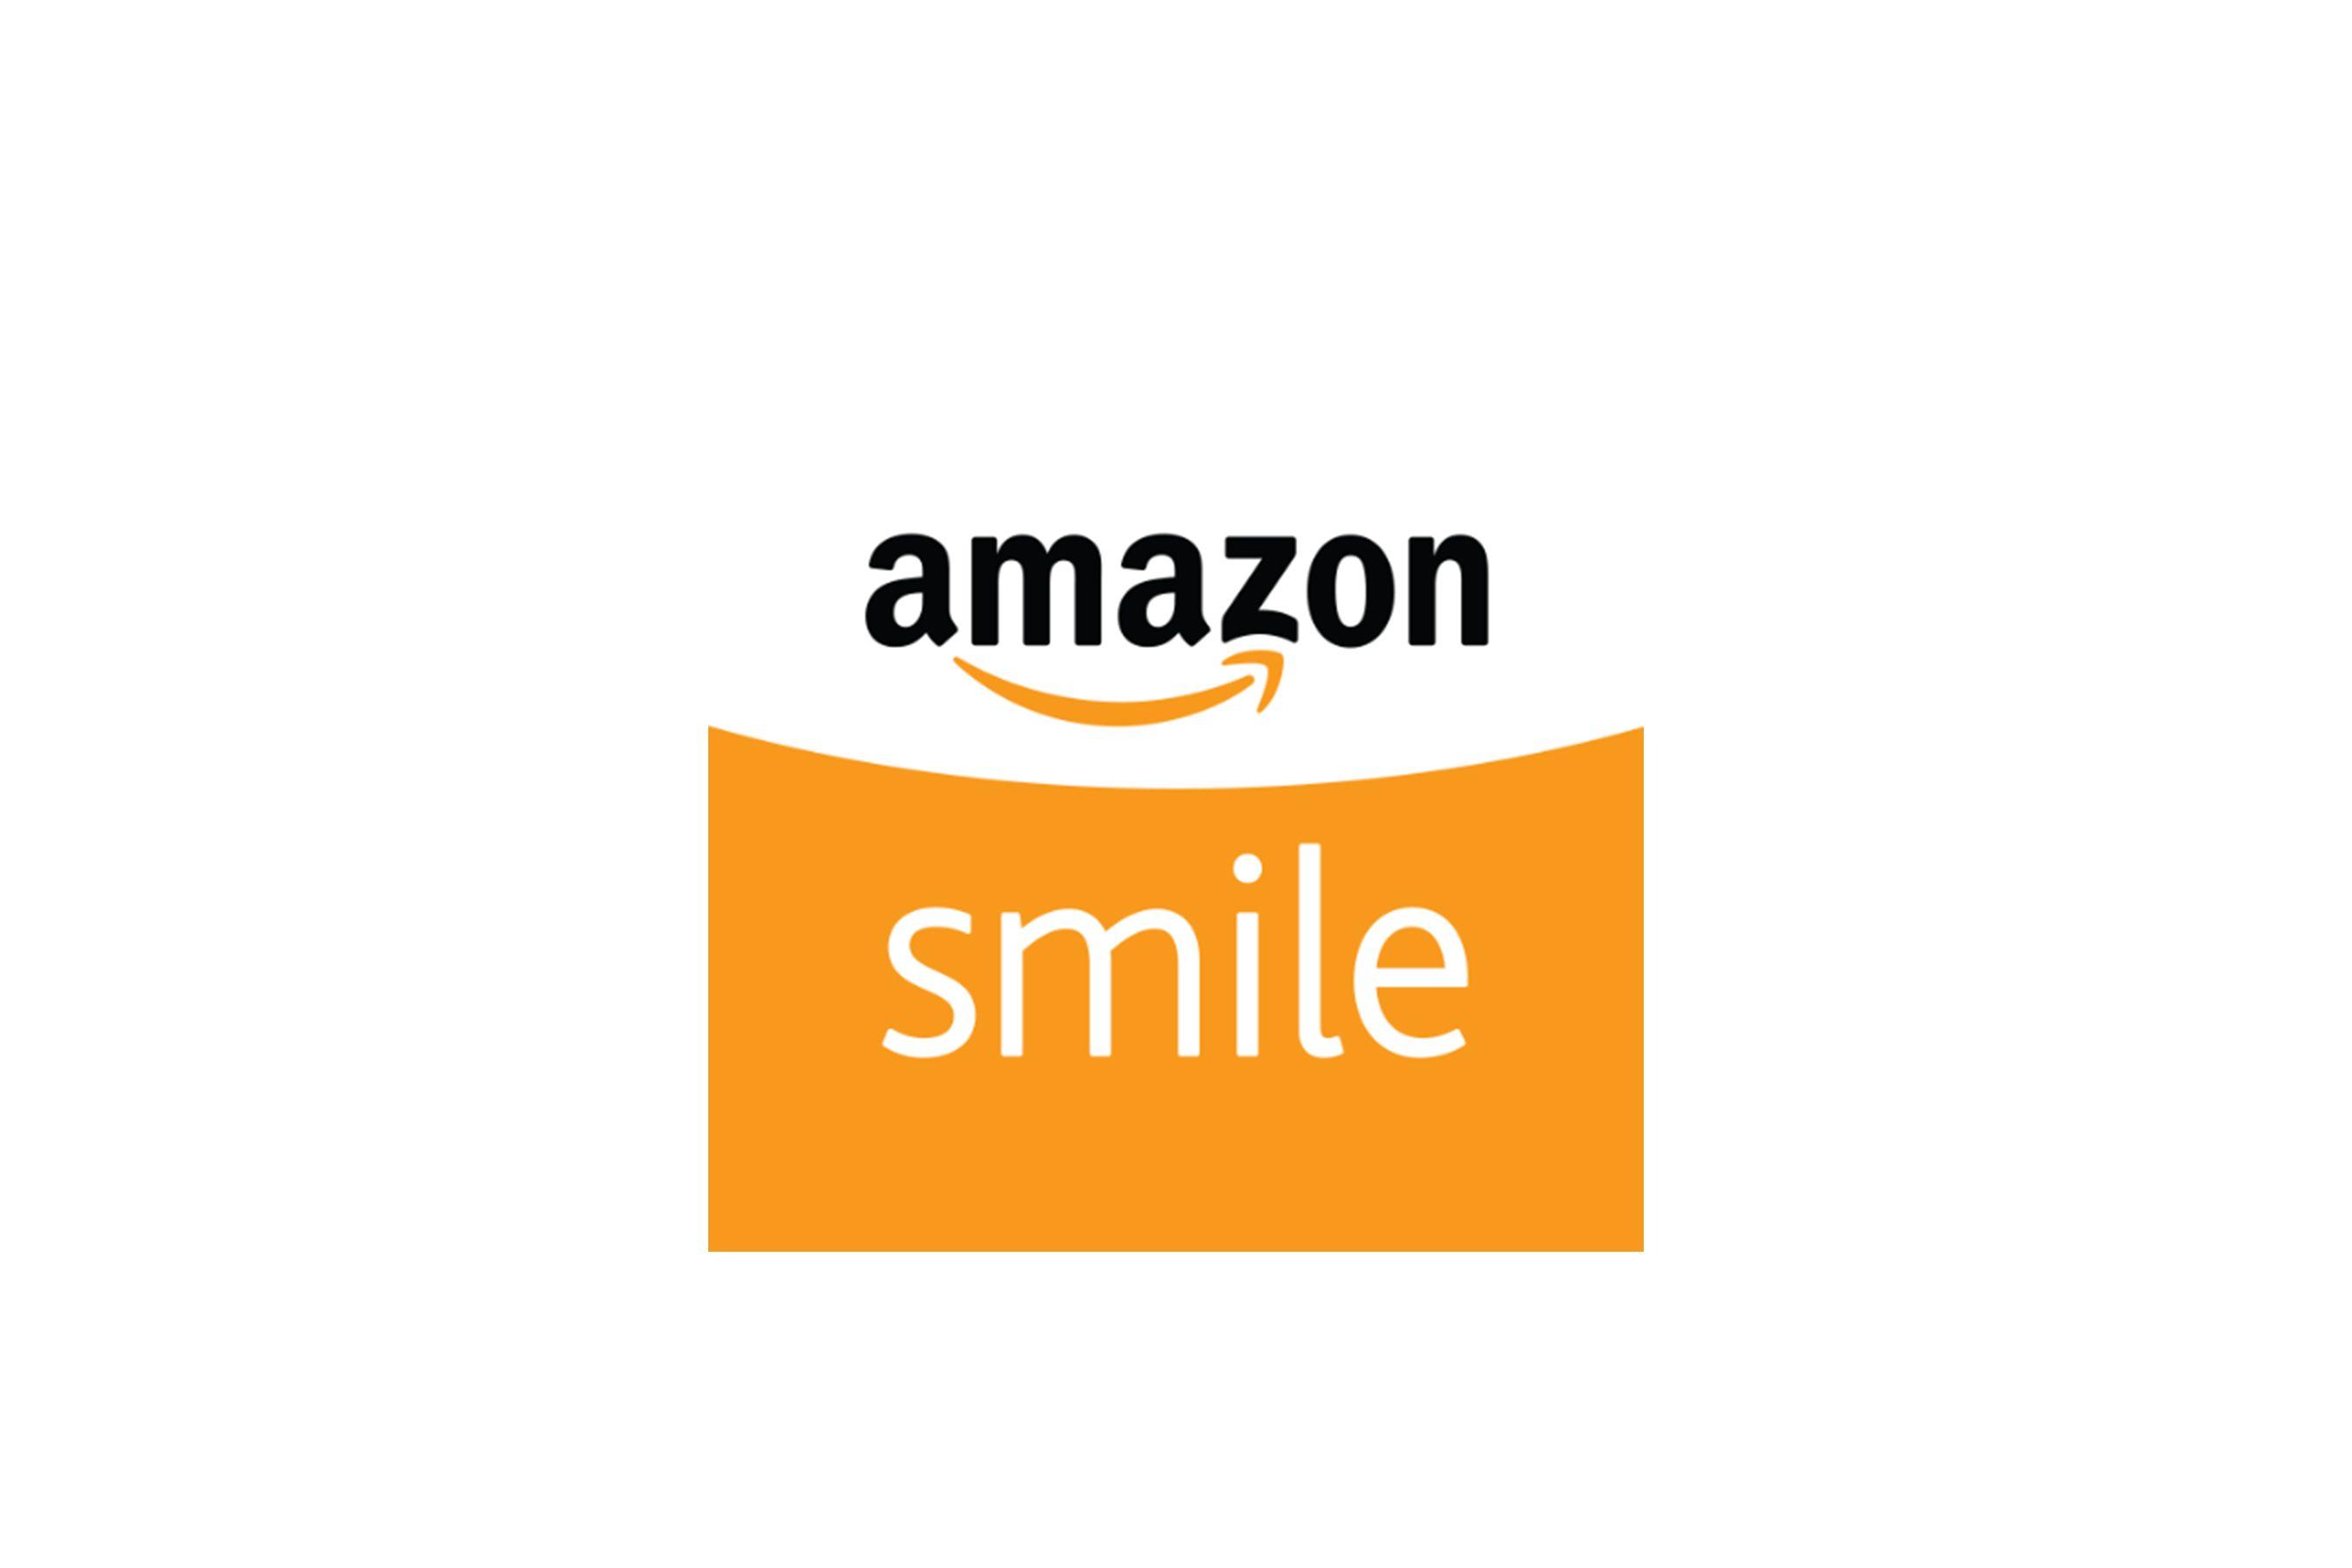 Amazon Smile Logo - Amazon smile Logos